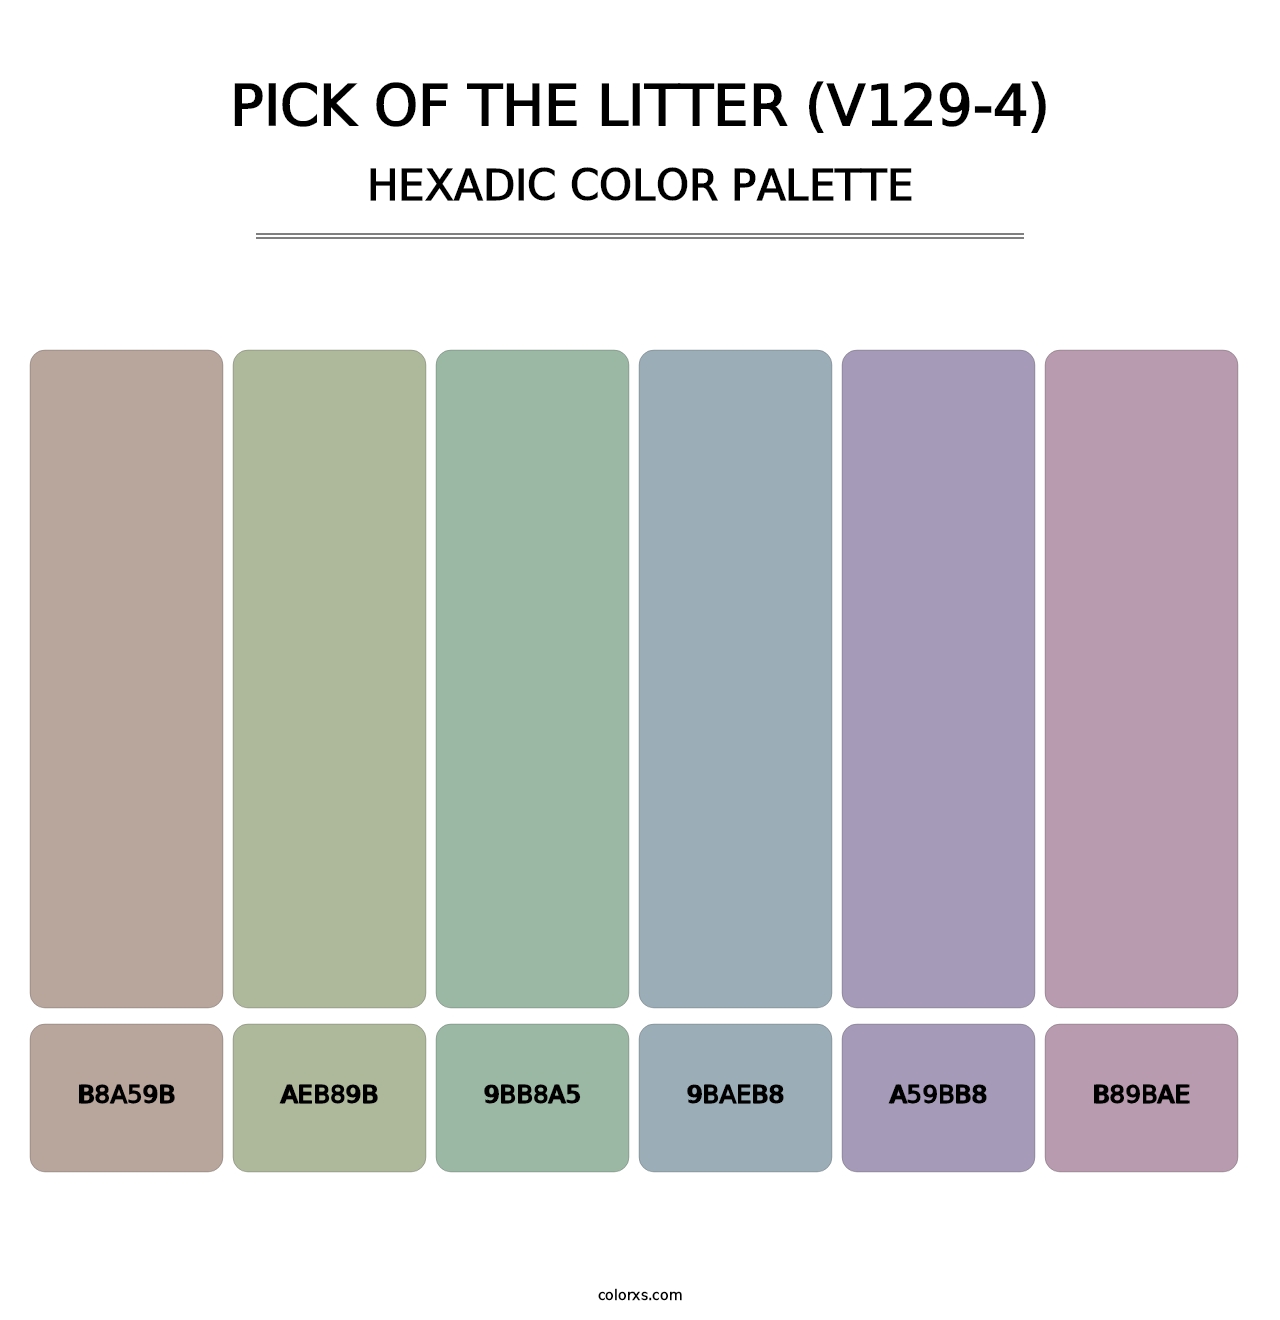 Pick of the Litter (V129-4) - Hexadic Color Palette